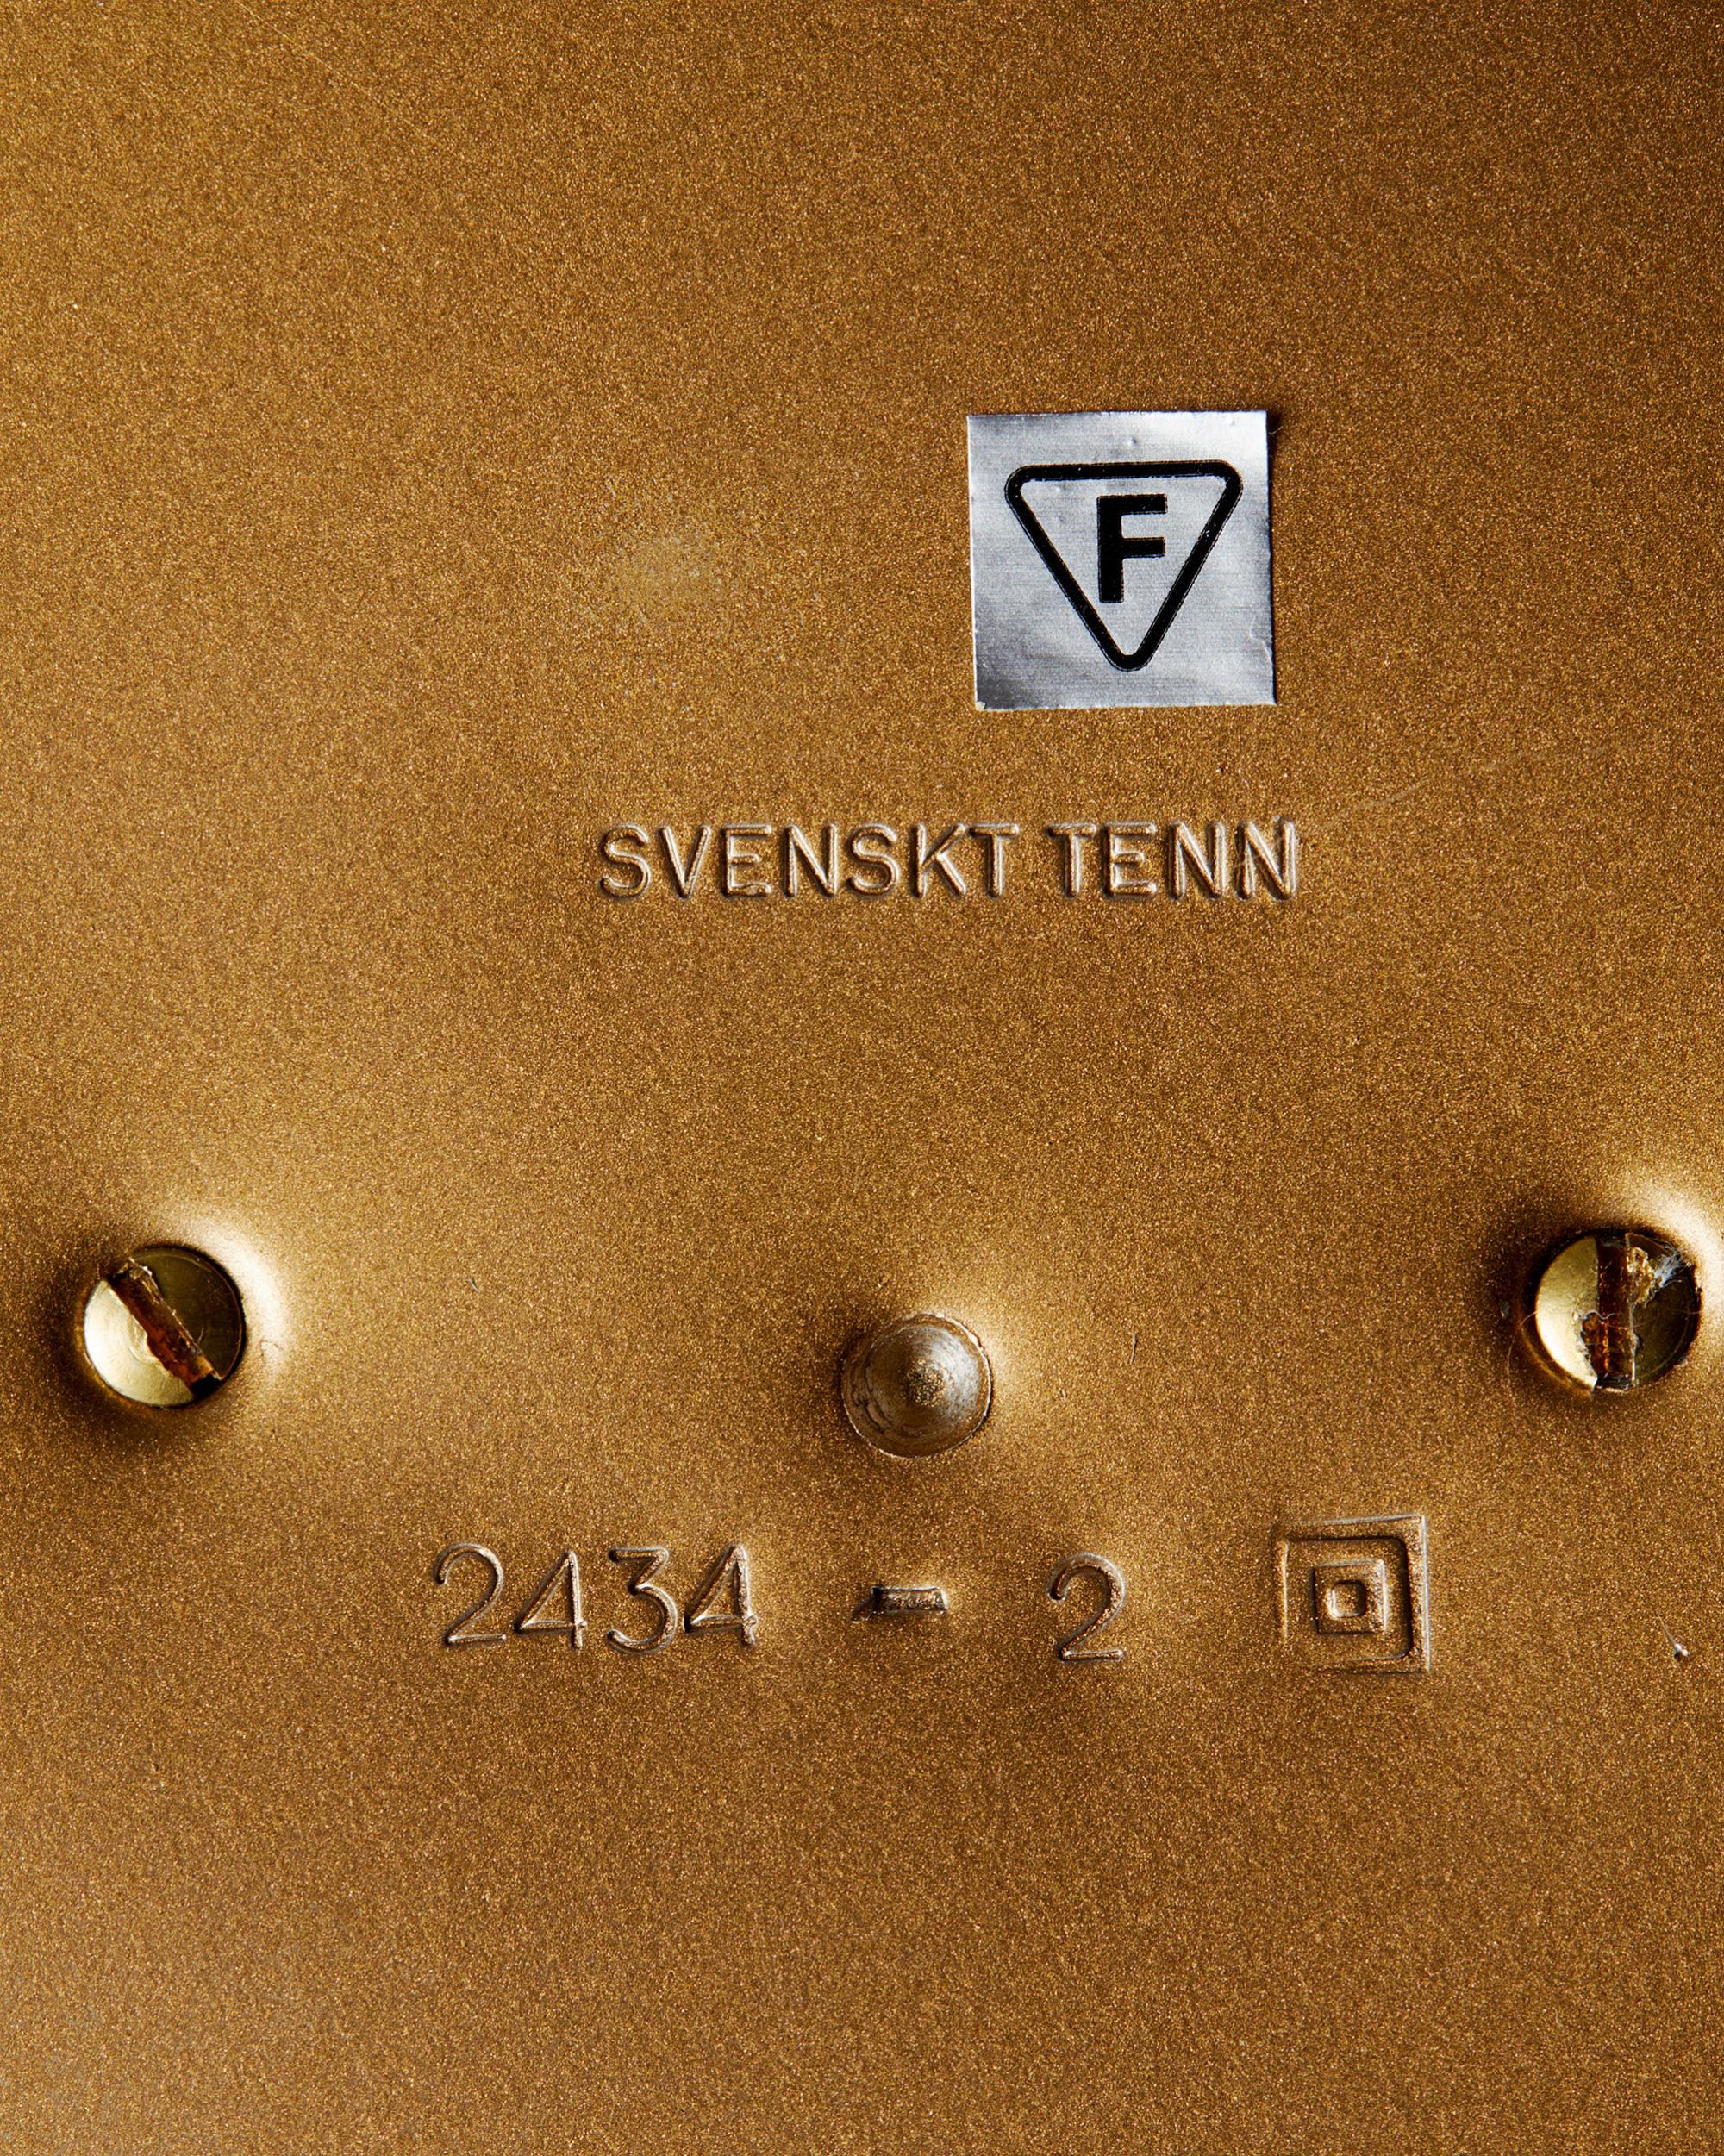 Mid-20th Century Table Lamp Model 2434 Designed by Josef Frank for Svenskt Tenn, Sweden, 1939